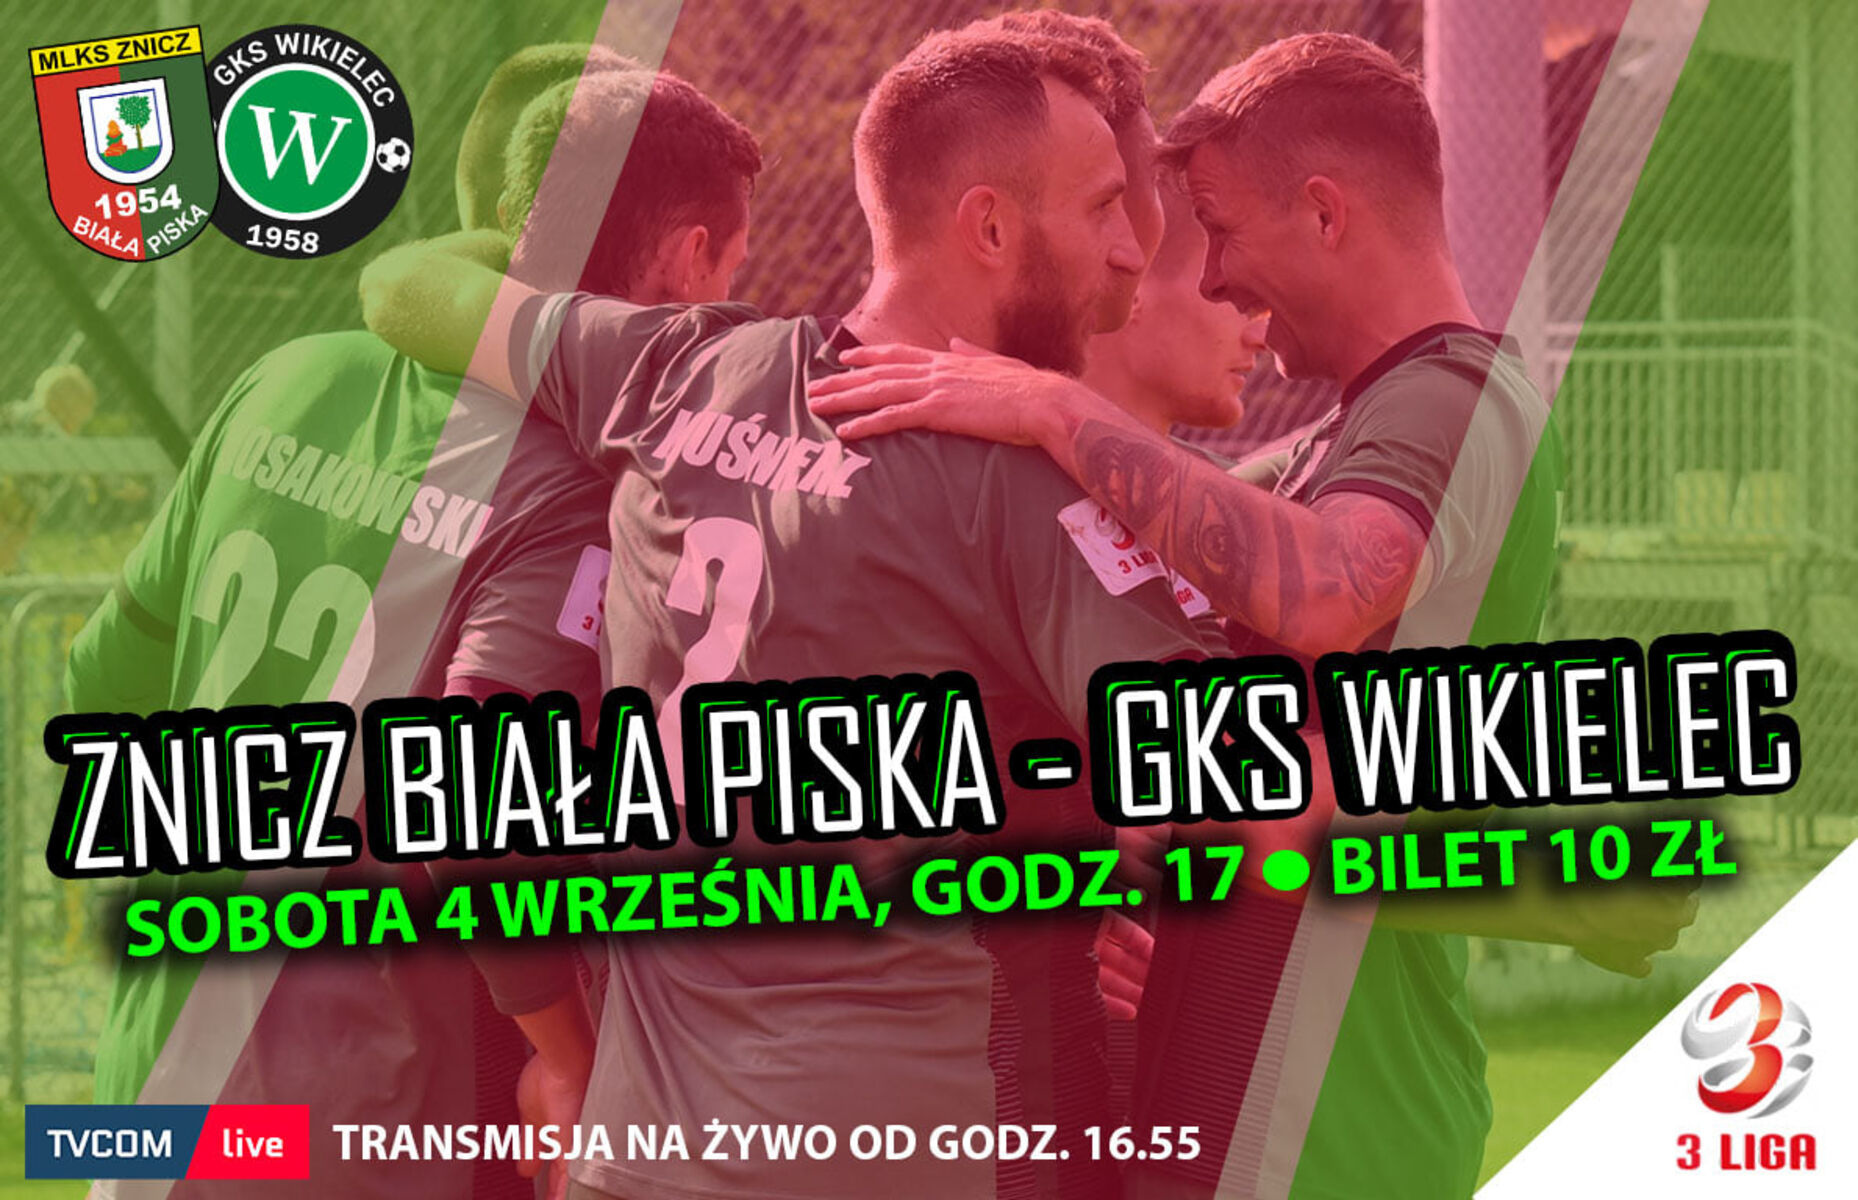 Grafika promująca mecz Znicz Biała Piska - GKS Wikielec. Fot. Znicz Biała Piska